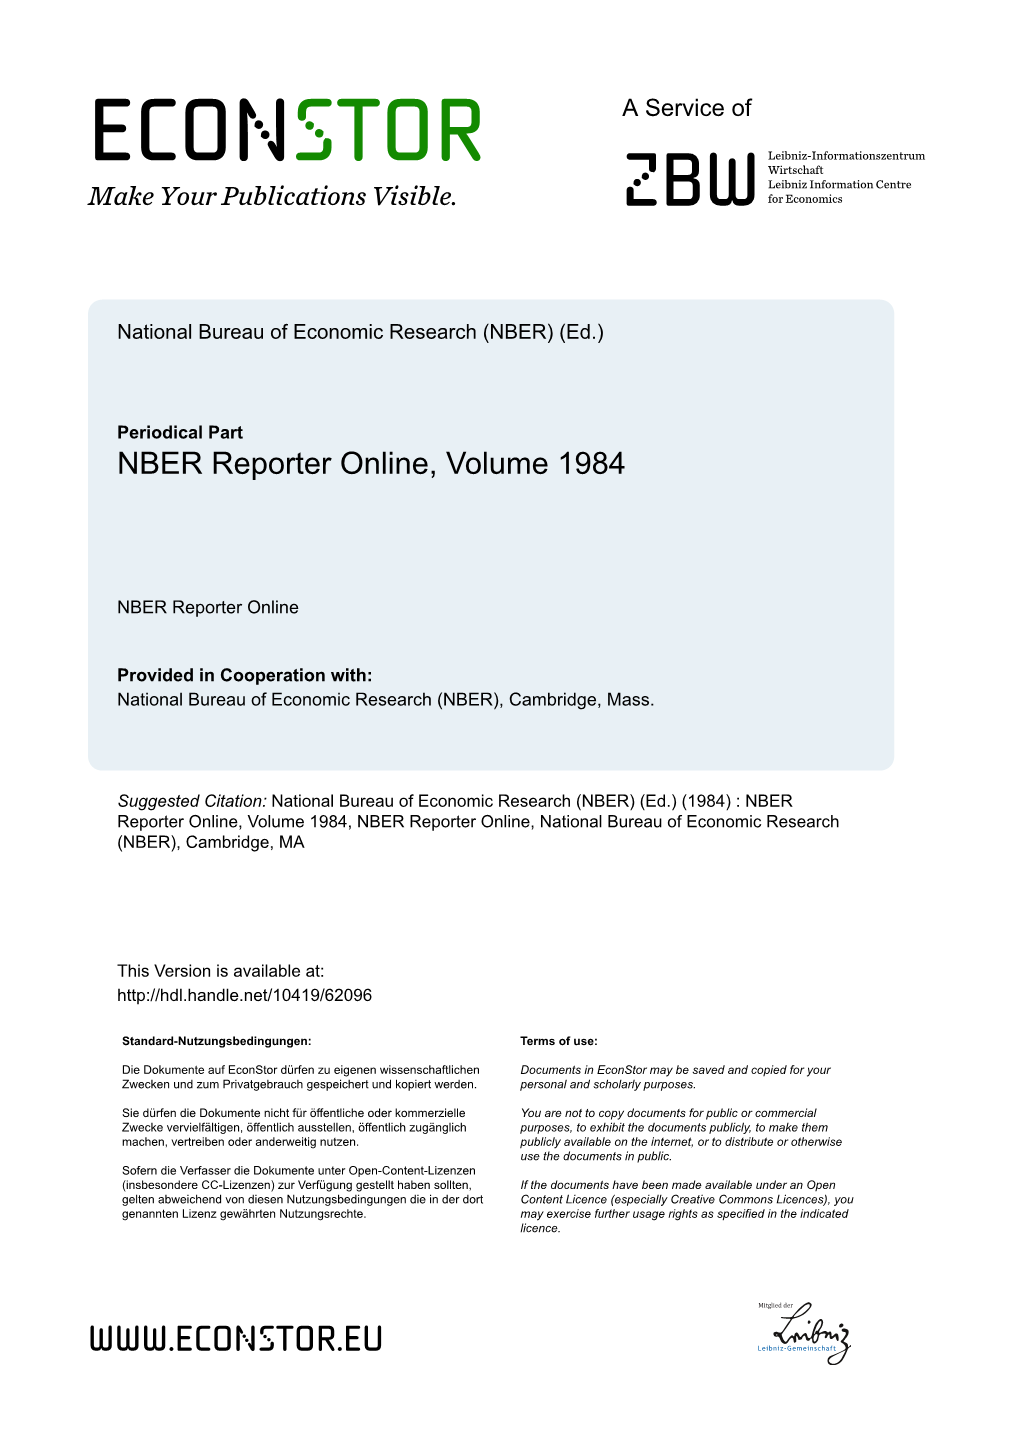 NBER Reporter Online, Volume 1984